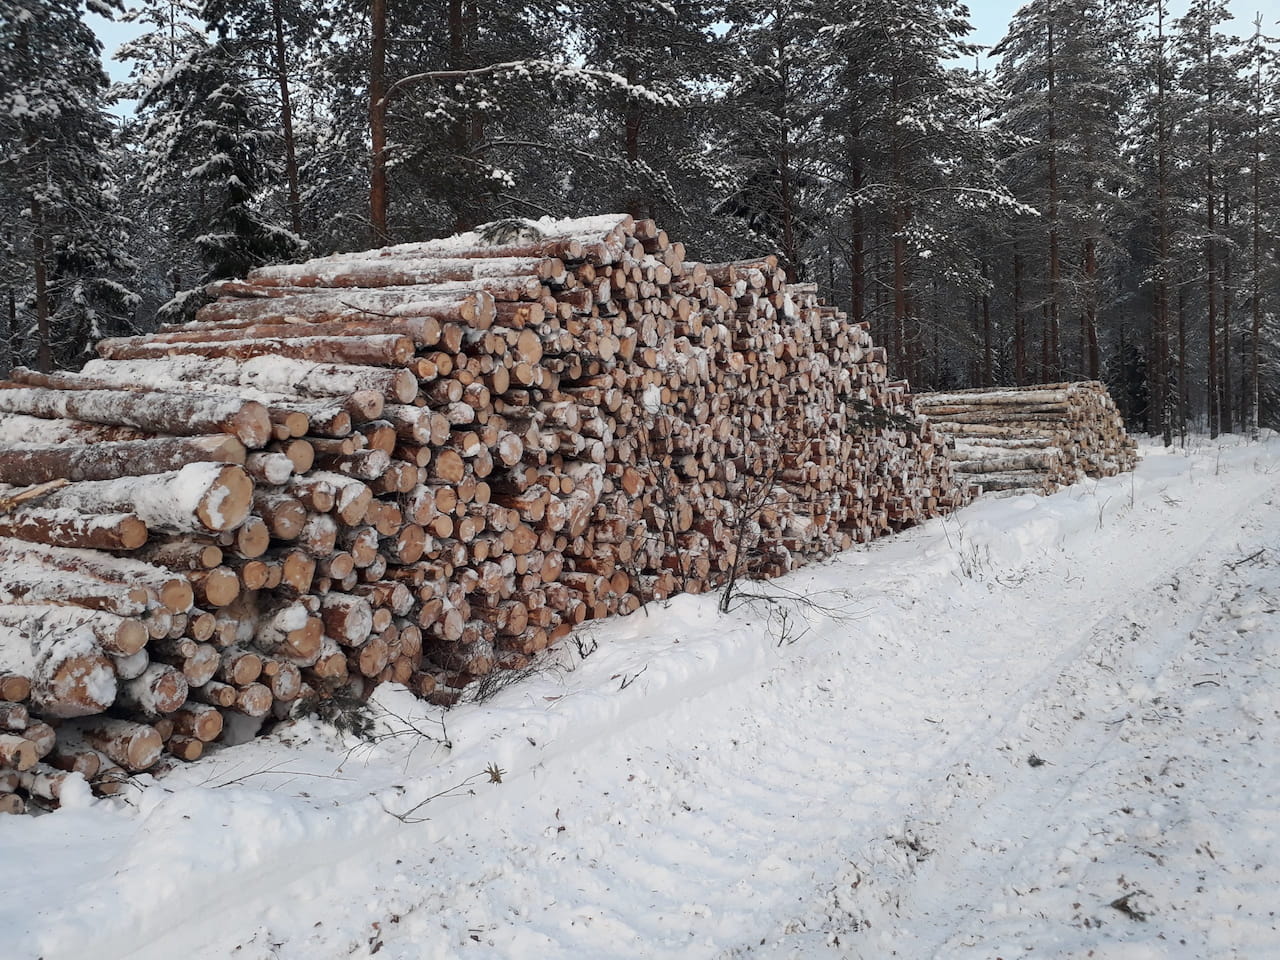 Hyödynnä jäsenyyden edut – käytä metsäammattilaista puukaupassa apuna